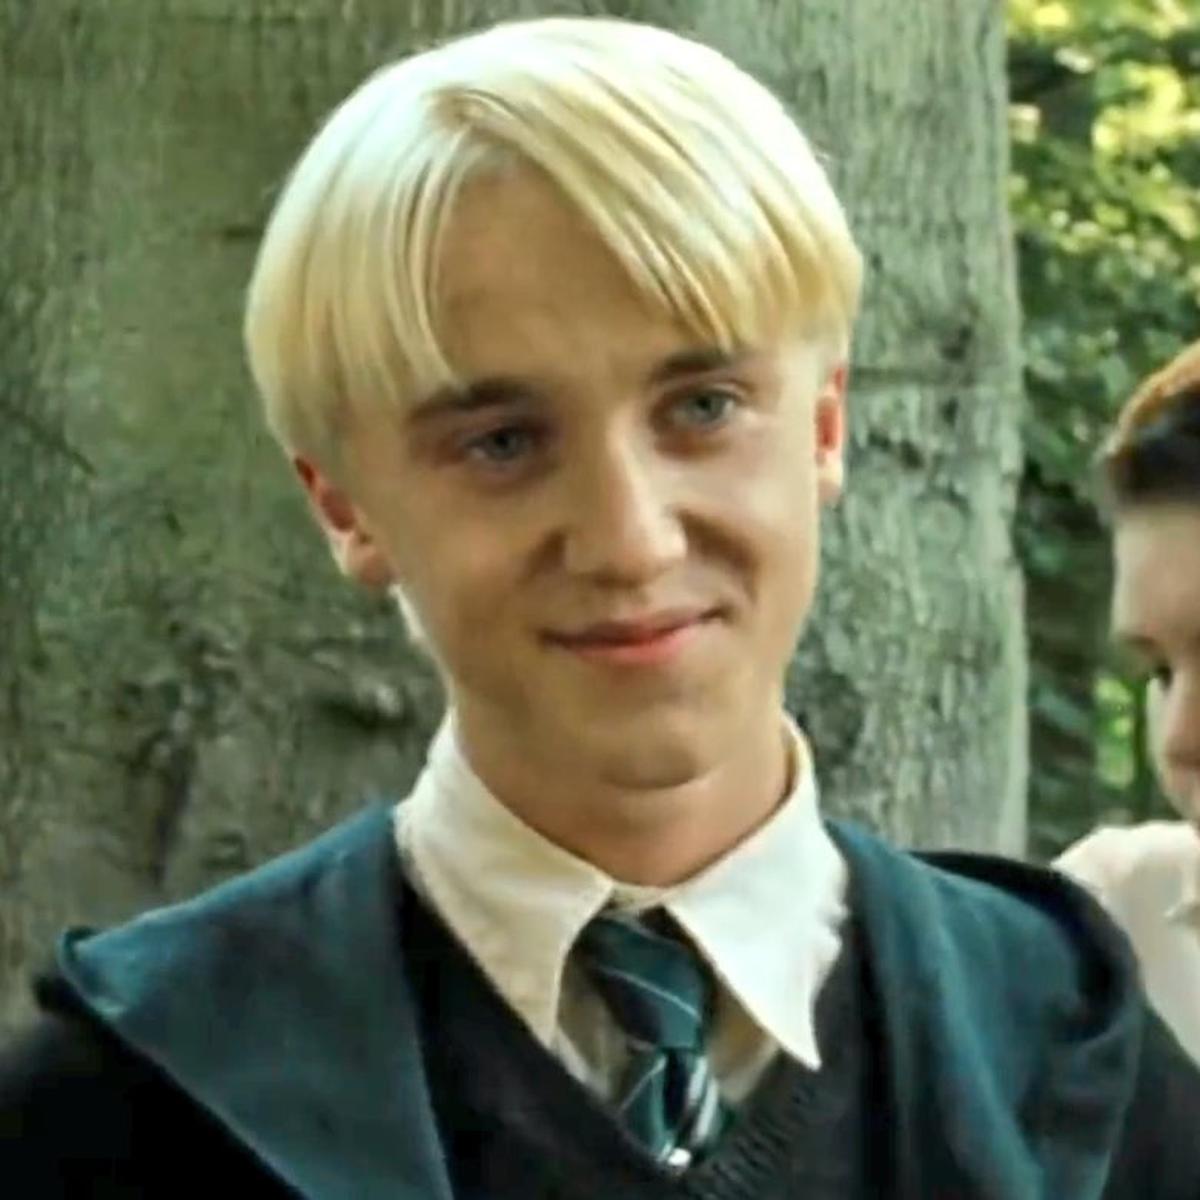 Harry Potter: el dato oculto sobre Draco Malfoy que sorprende a los fans  nnda nnlt | DEPOR-PLAY | DEPOR